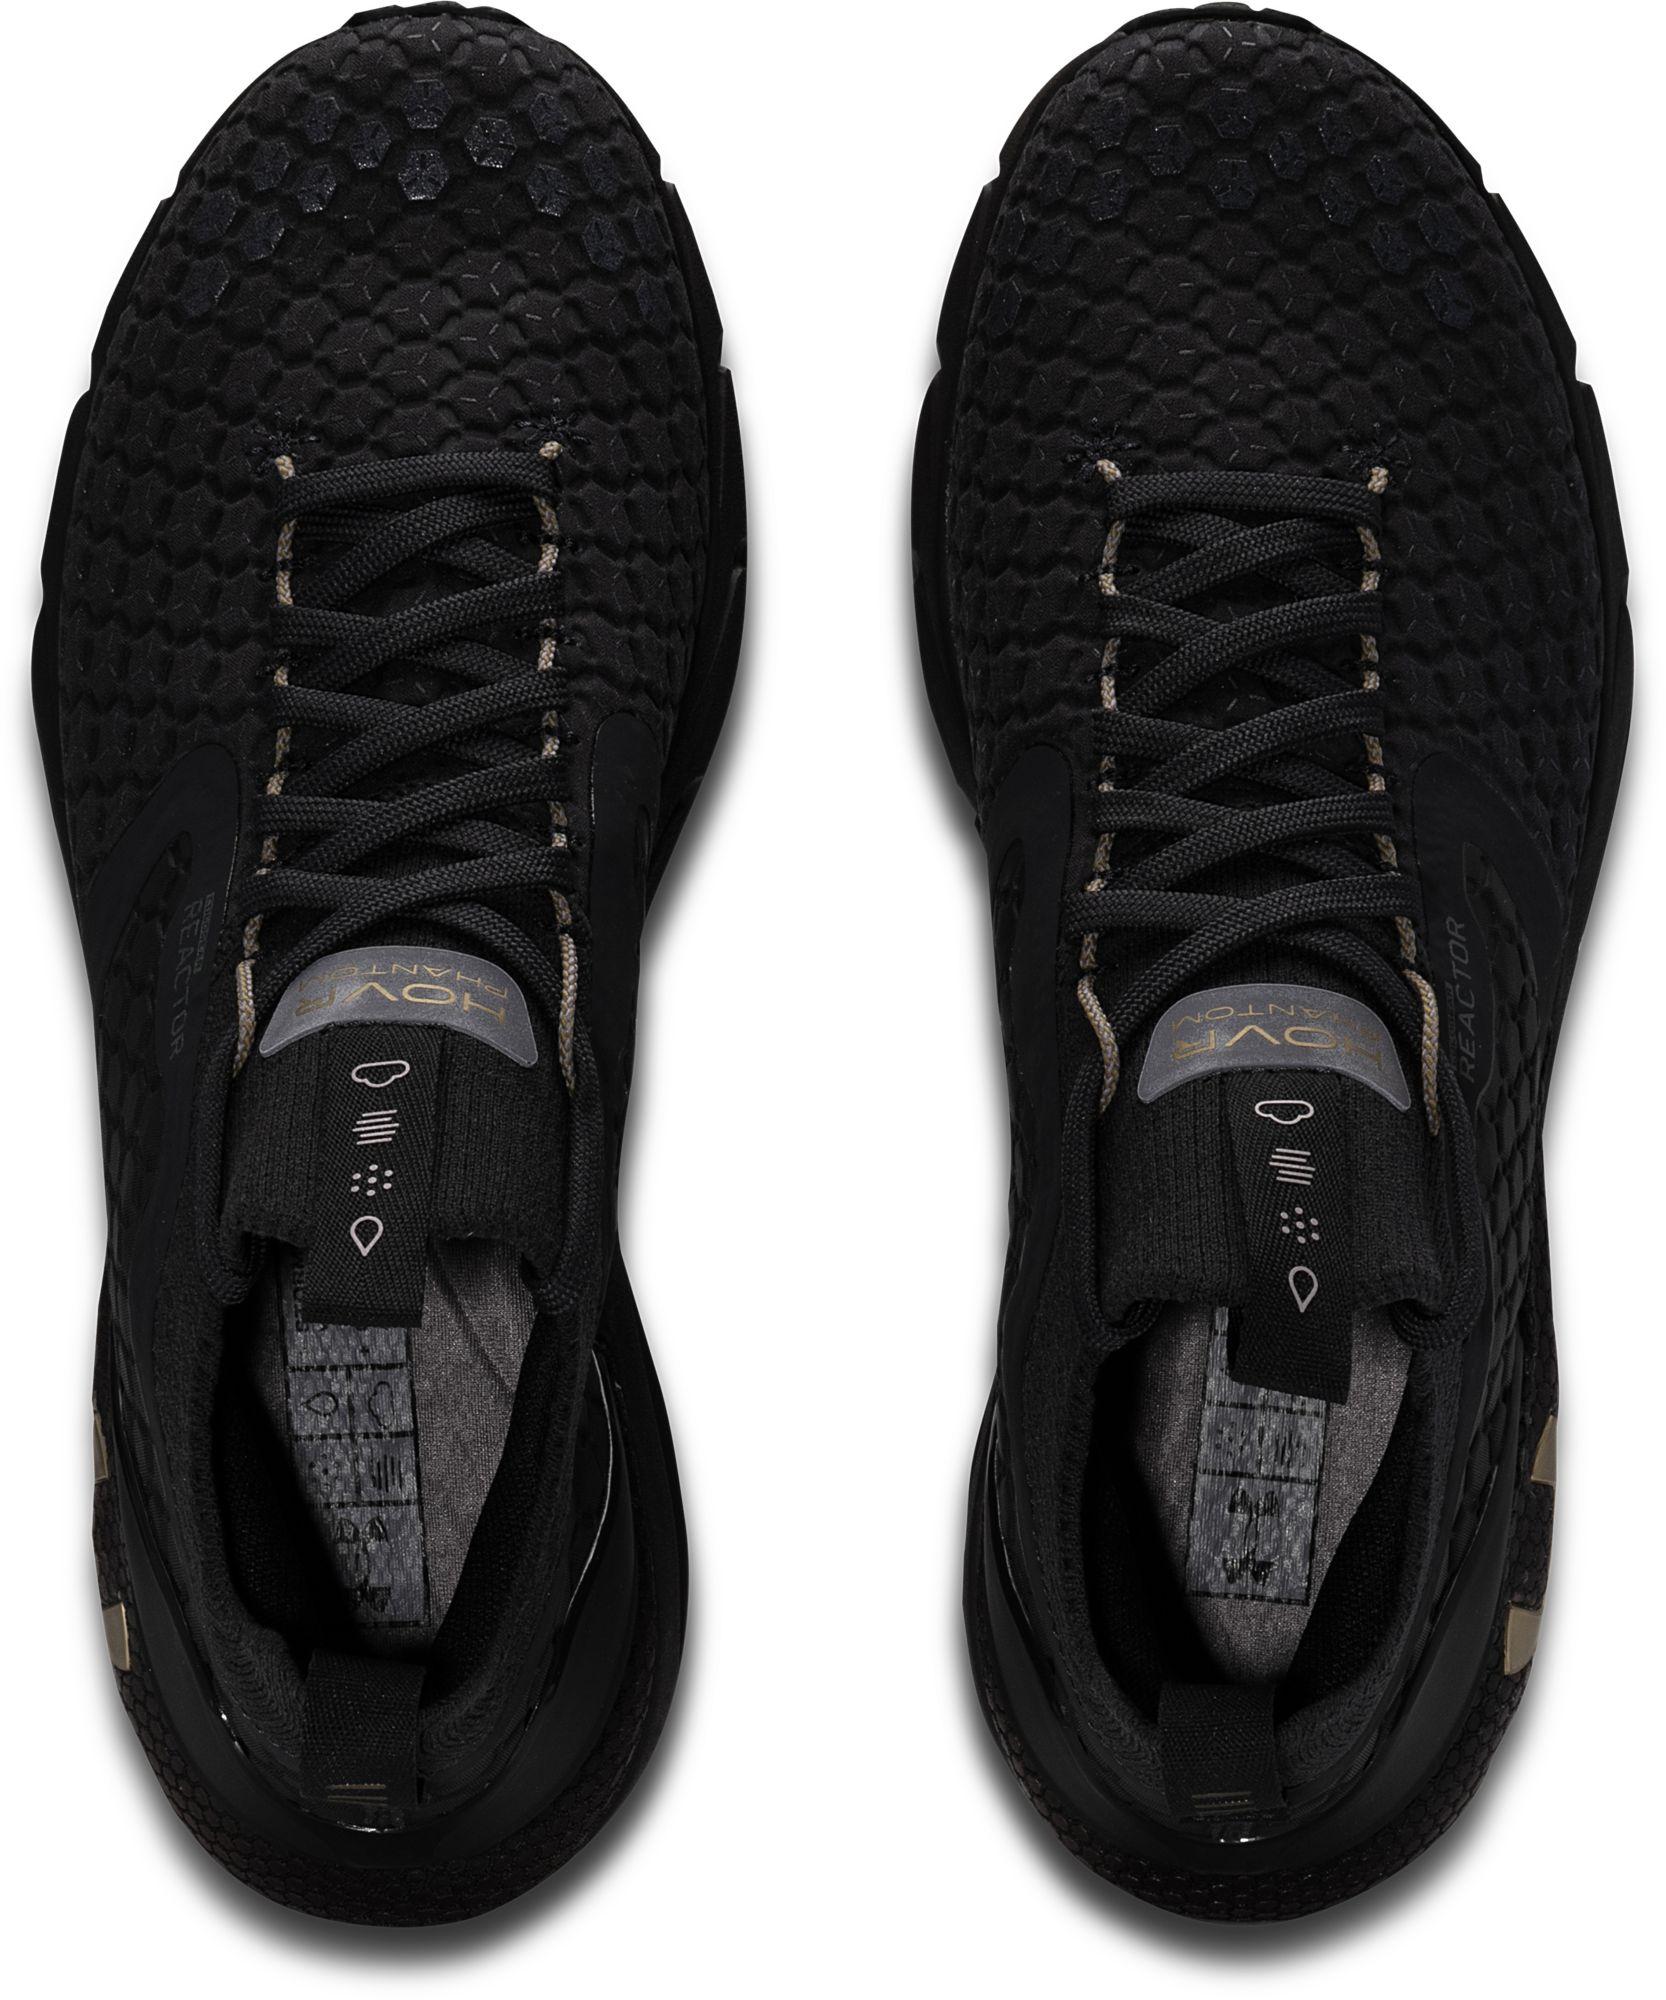 Under Armour Rubber Hovr Phantom 2 Cg Reactor Running Shoes in  Black/Black/Black (Black) for Men - Lyst